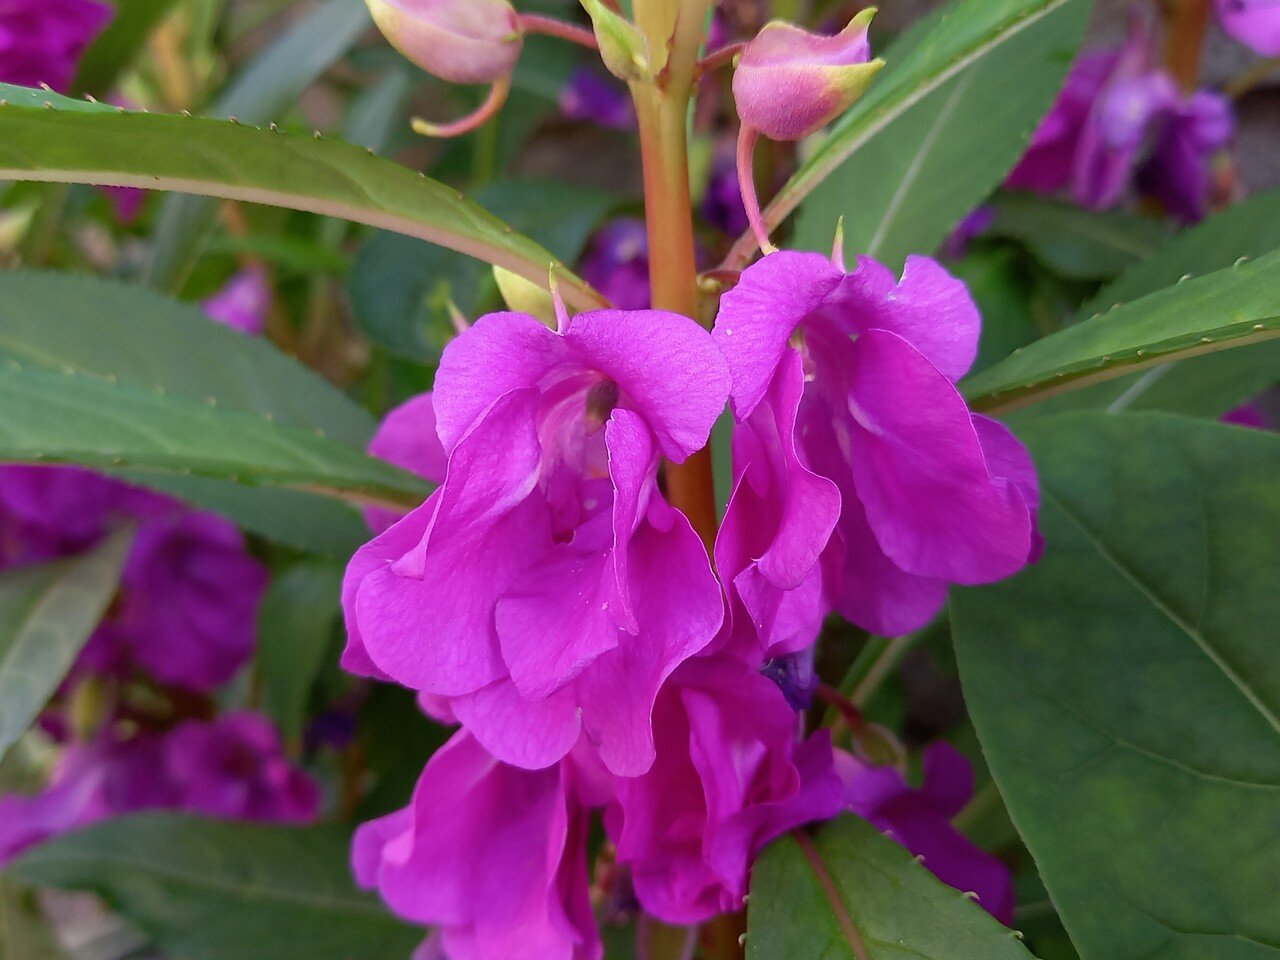 散策中に遭遇した紫系の花たち 柘榴 Note